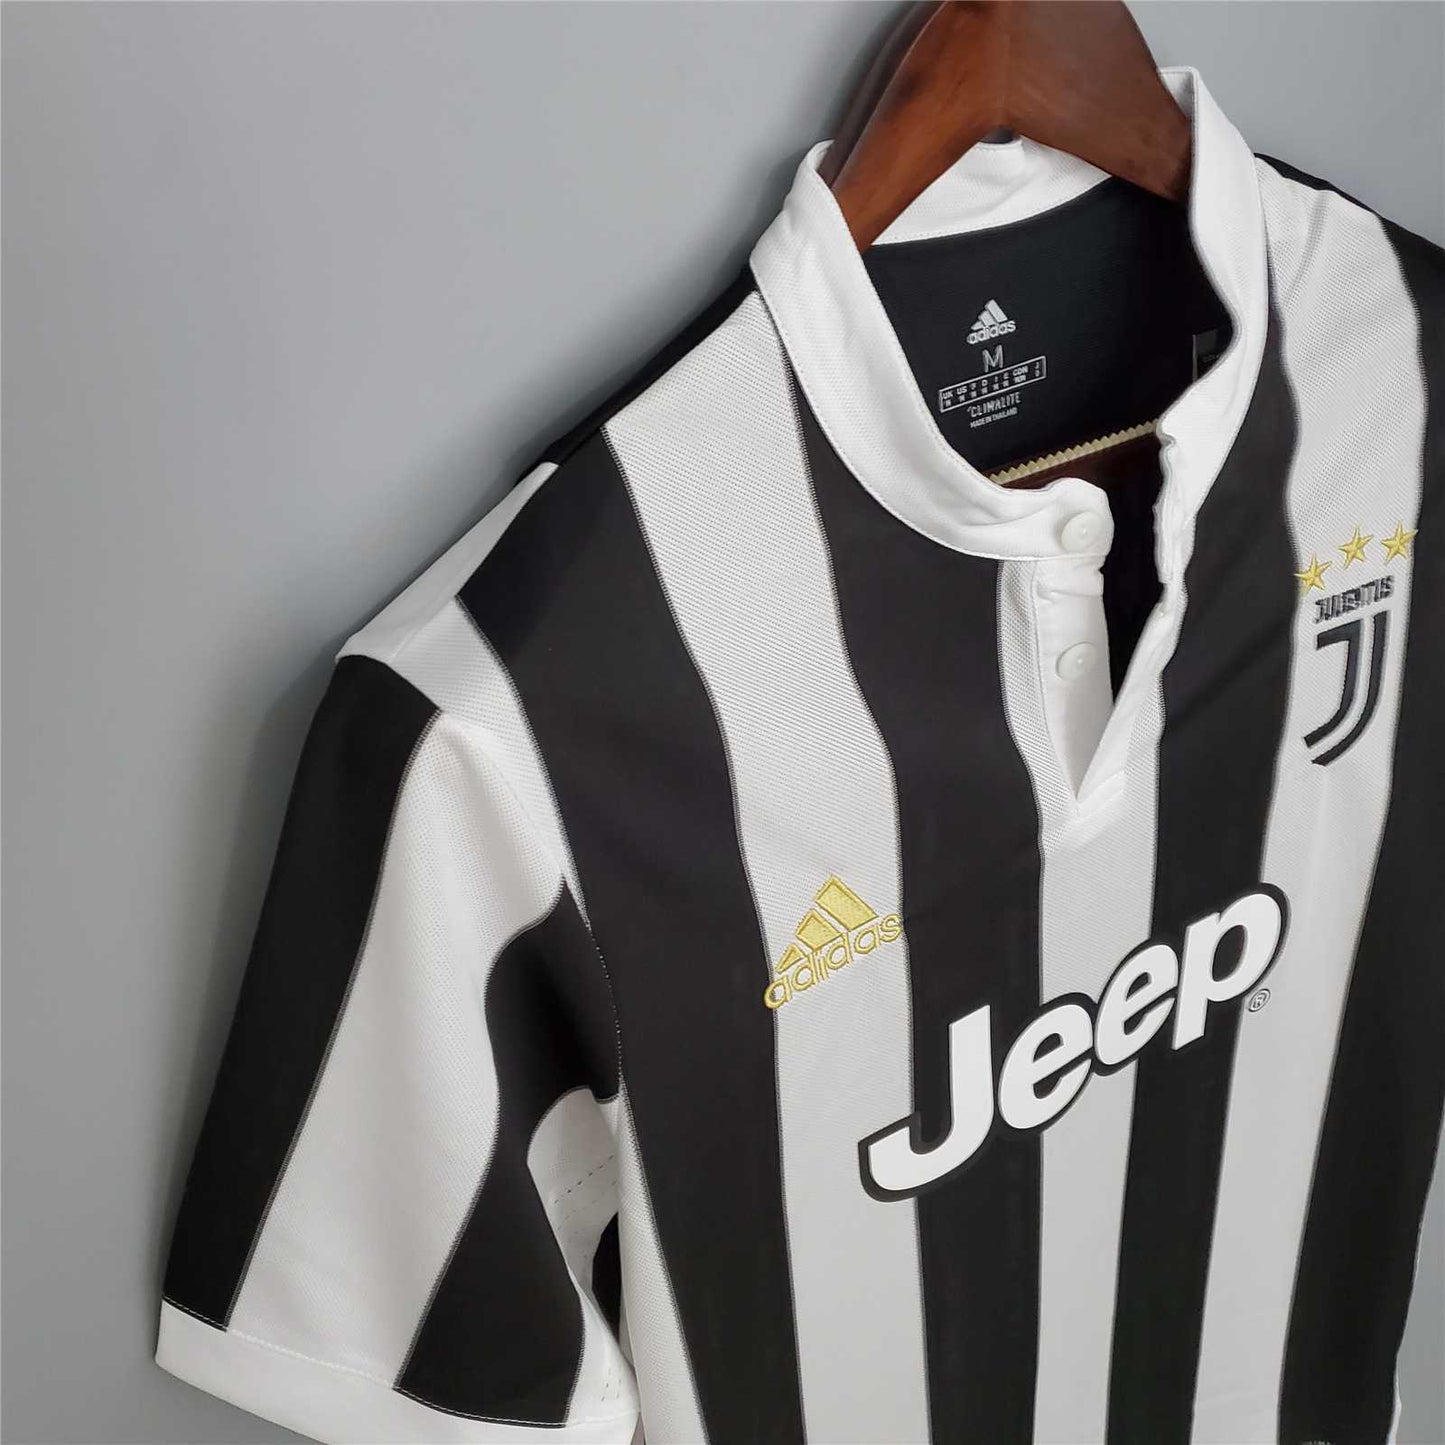 Juventus 17-18 Home Shirt